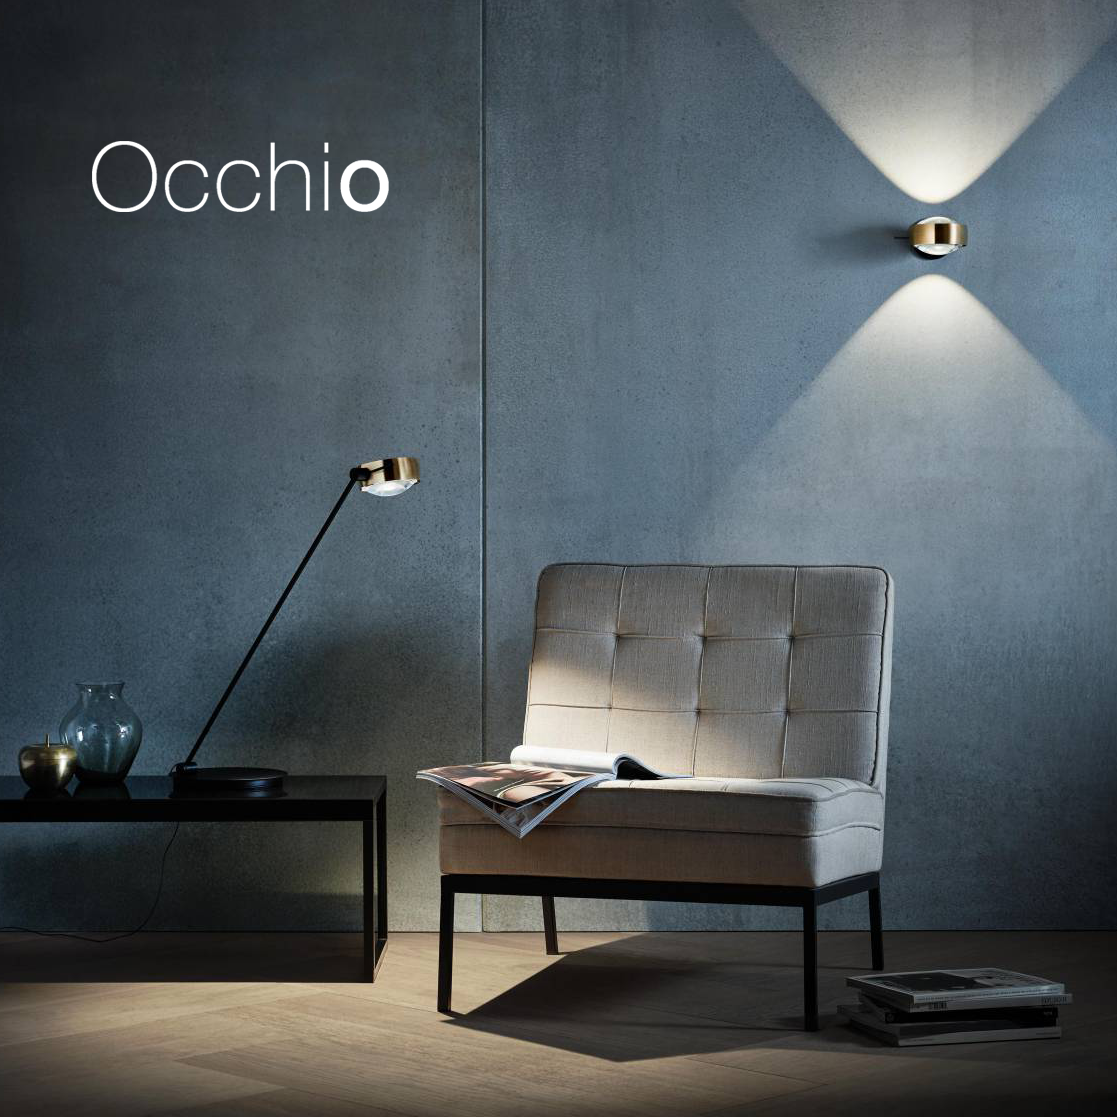 OCCHIO – modulový osvetlovací systém Occhio pre unikátne svetelné riešenia v technológii LED